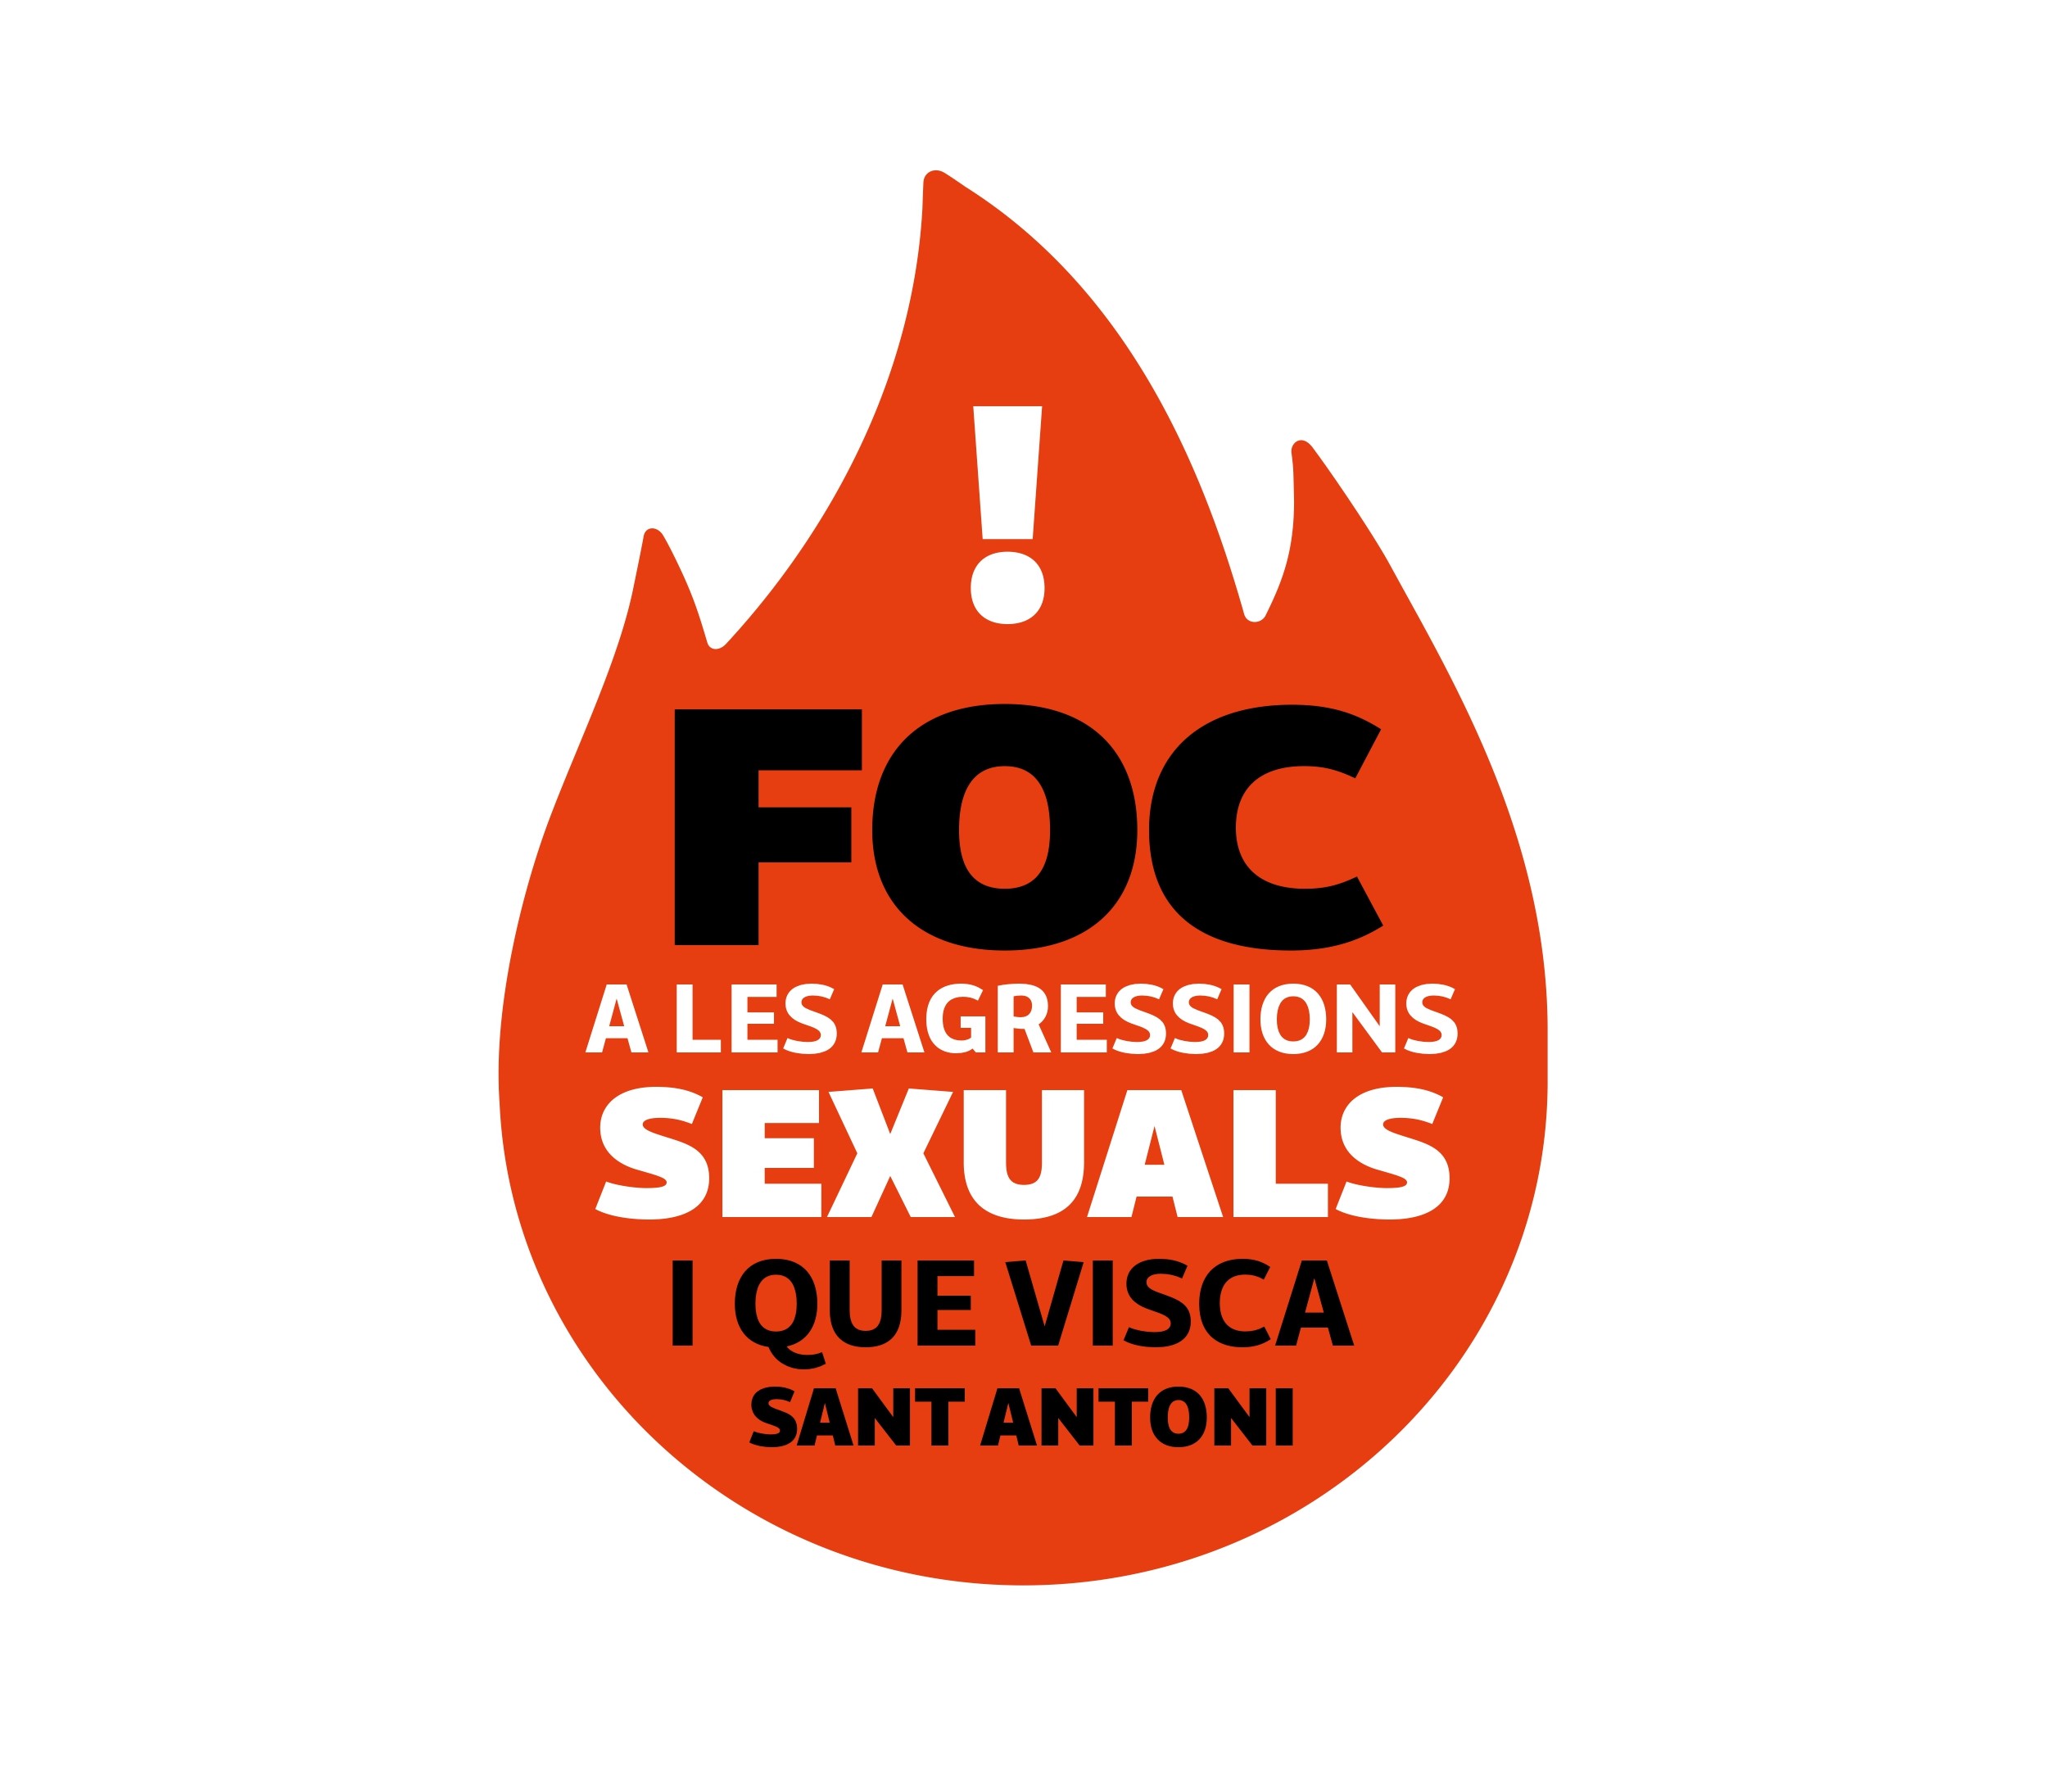 ‘Foc a les agressions sexuals i que visca Sant Antoni', la campanya de Manacor per a aquestes festes